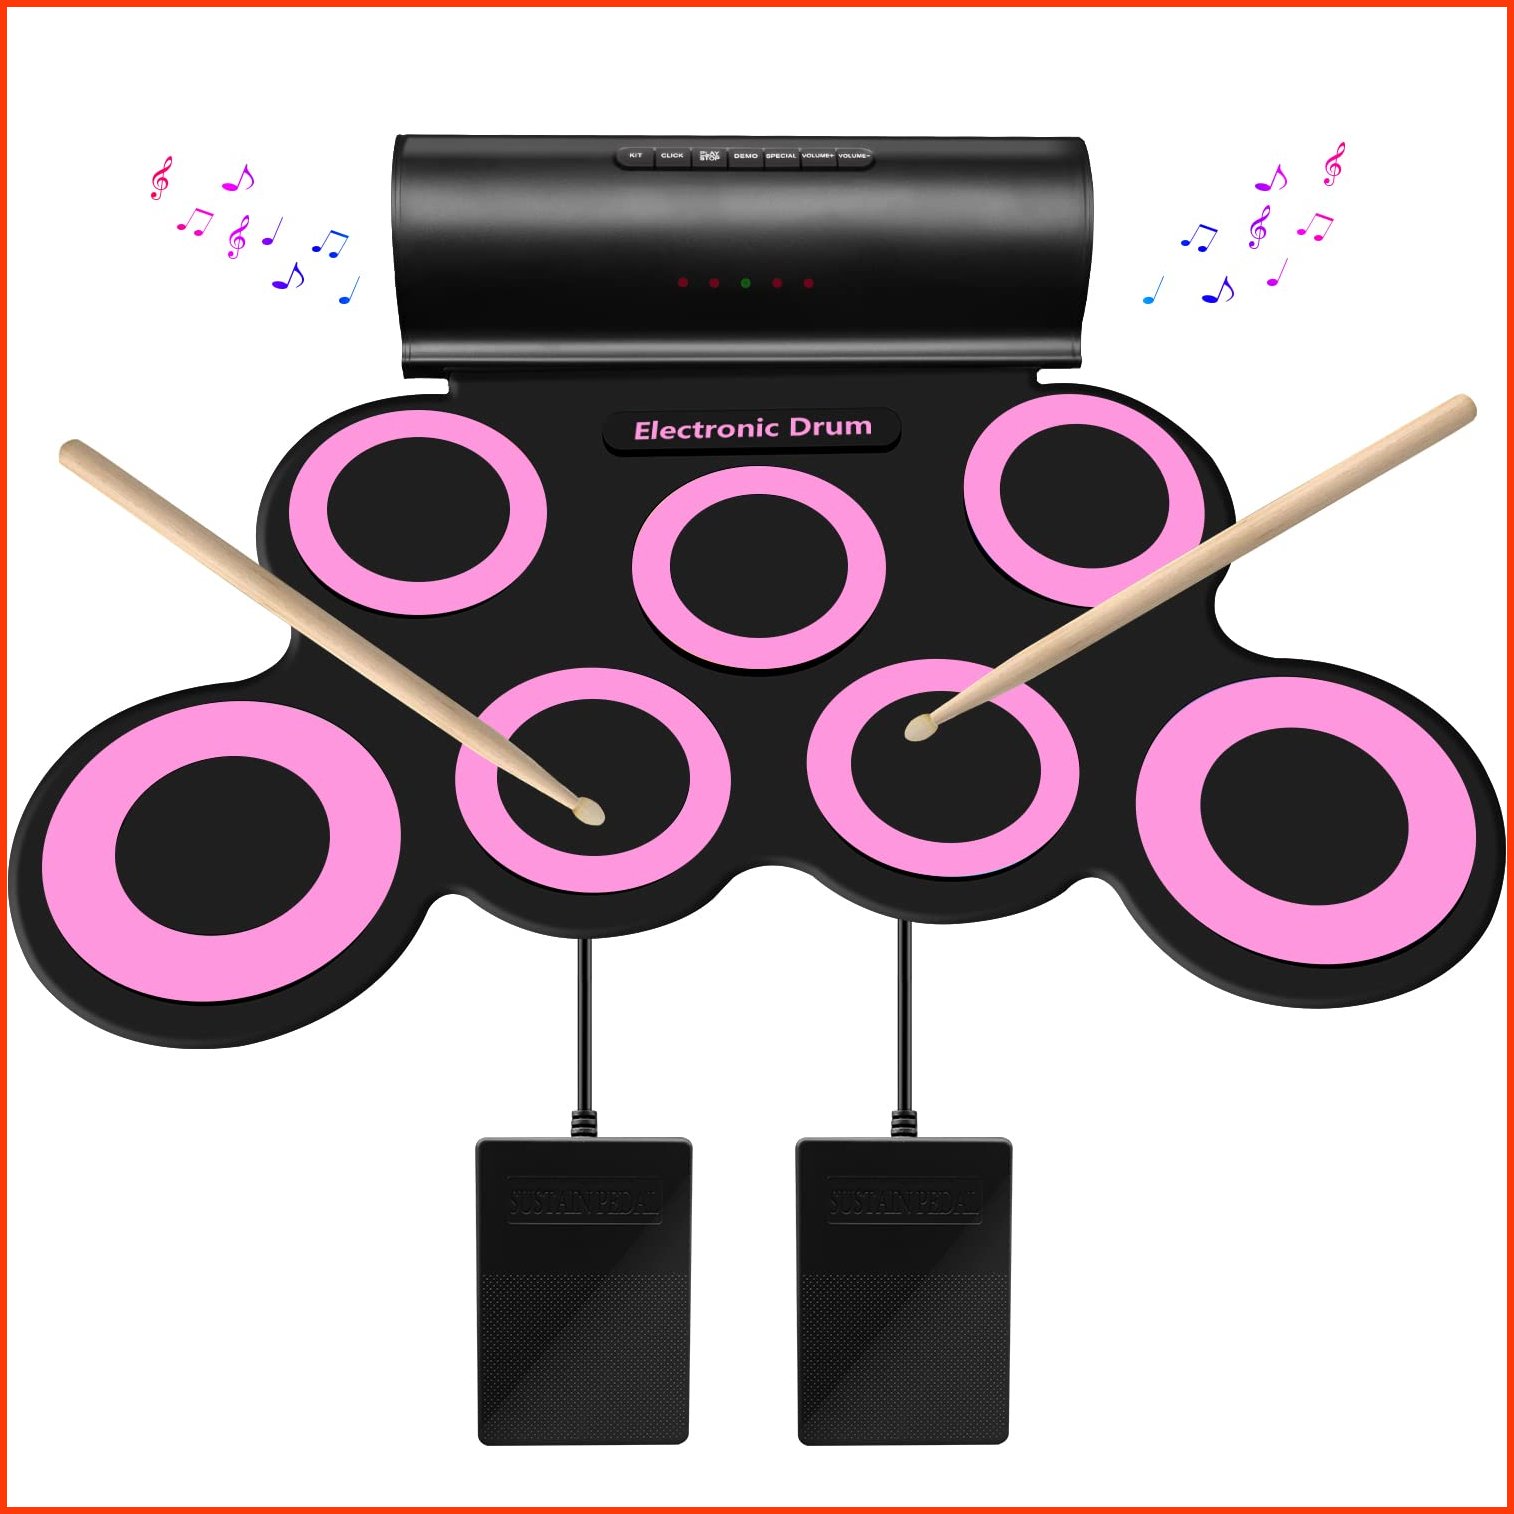 並行輸入品SUNKOO Electronic Drum Set Roll-Up Drum Practice Pad Drum Kit with Headphone Jack Built-in Speaker Drum Pedal